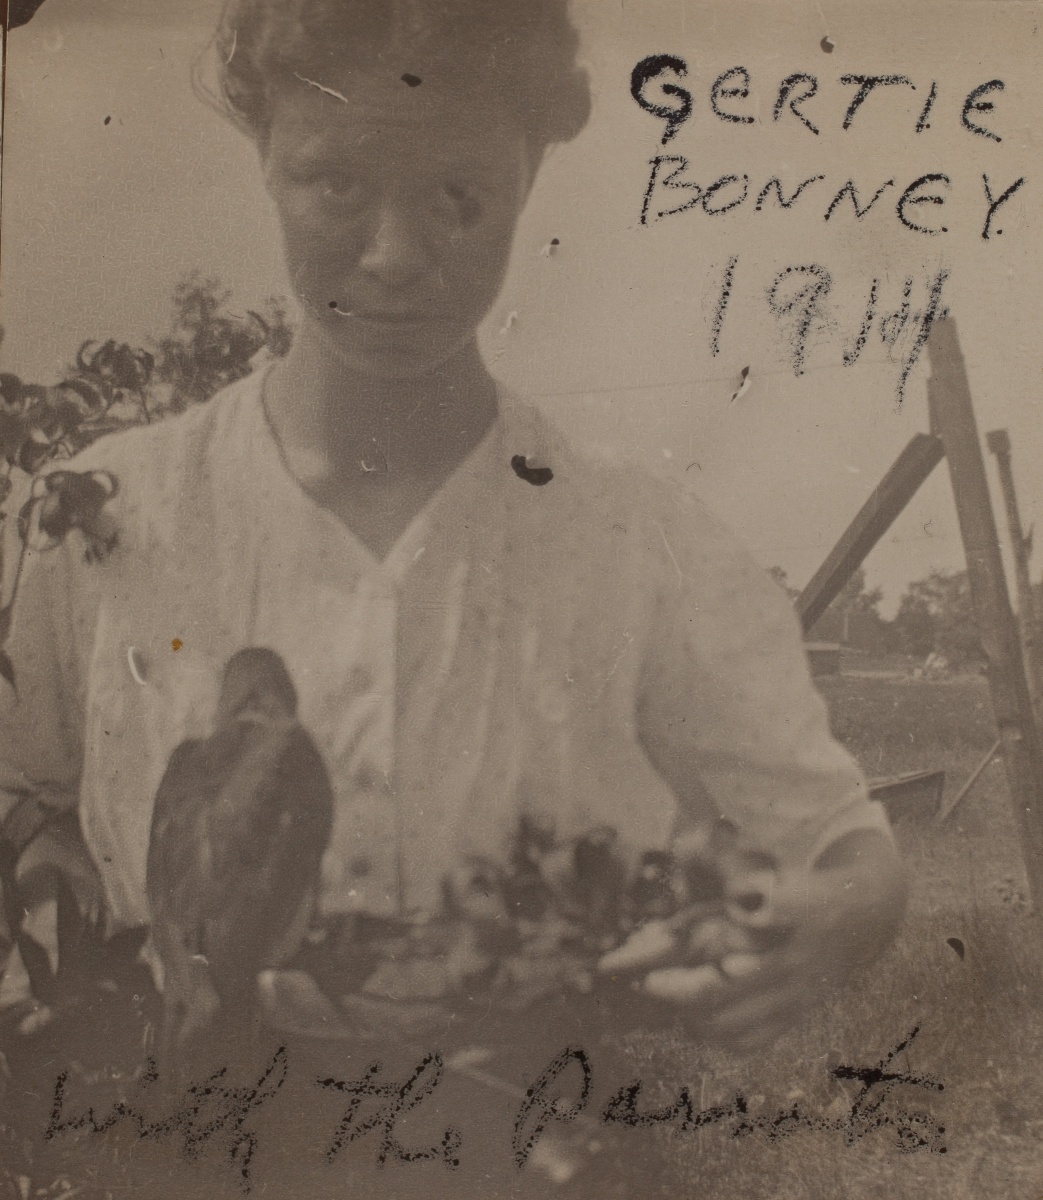 1914 Gertie Bonney with the parrots"